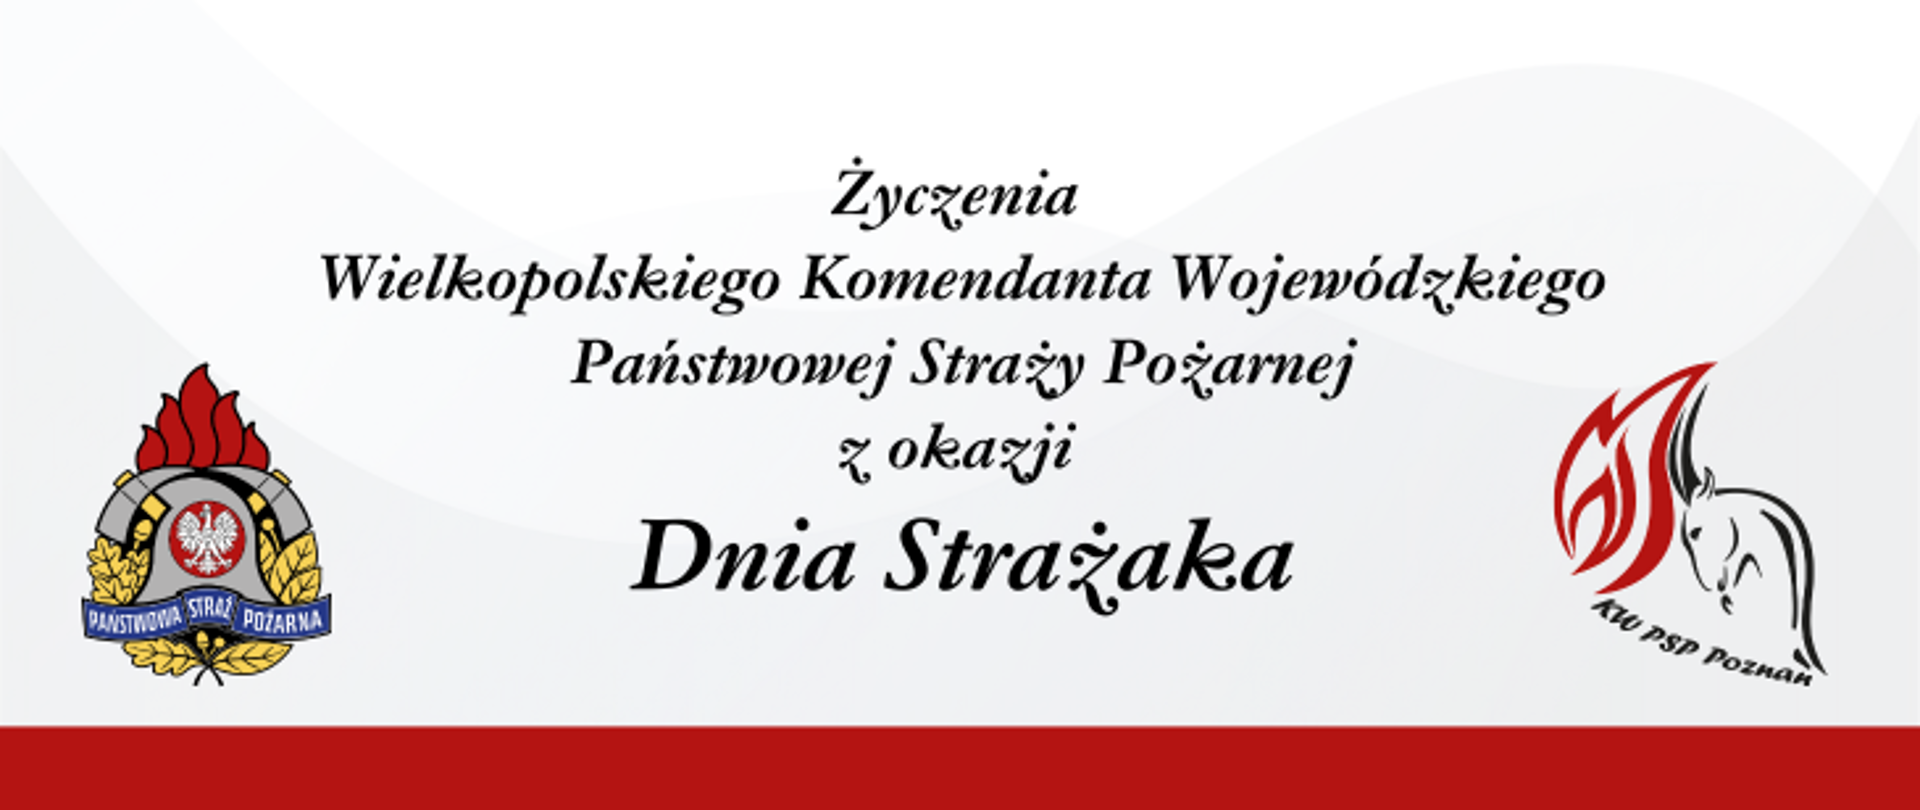 Życzenia Wielkopolskiego Komendanta Wojewódzkiego Państwowej Straży Pożarnej z okazji Dnia Strażaka